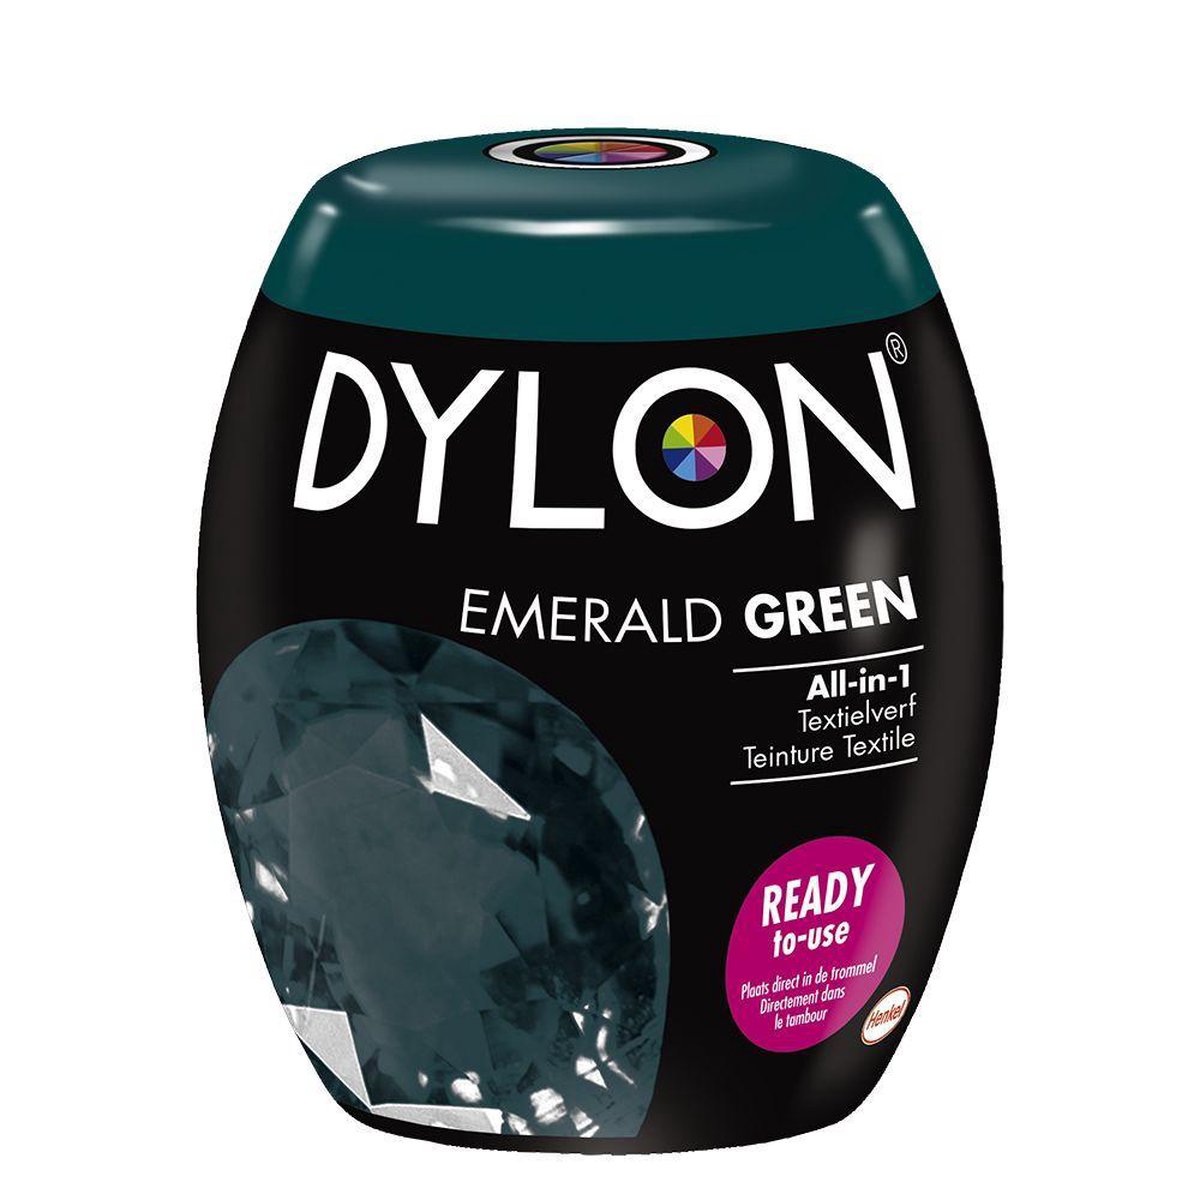 Dylon Wasmachine Textielverf Pods - Emerald Green 350g